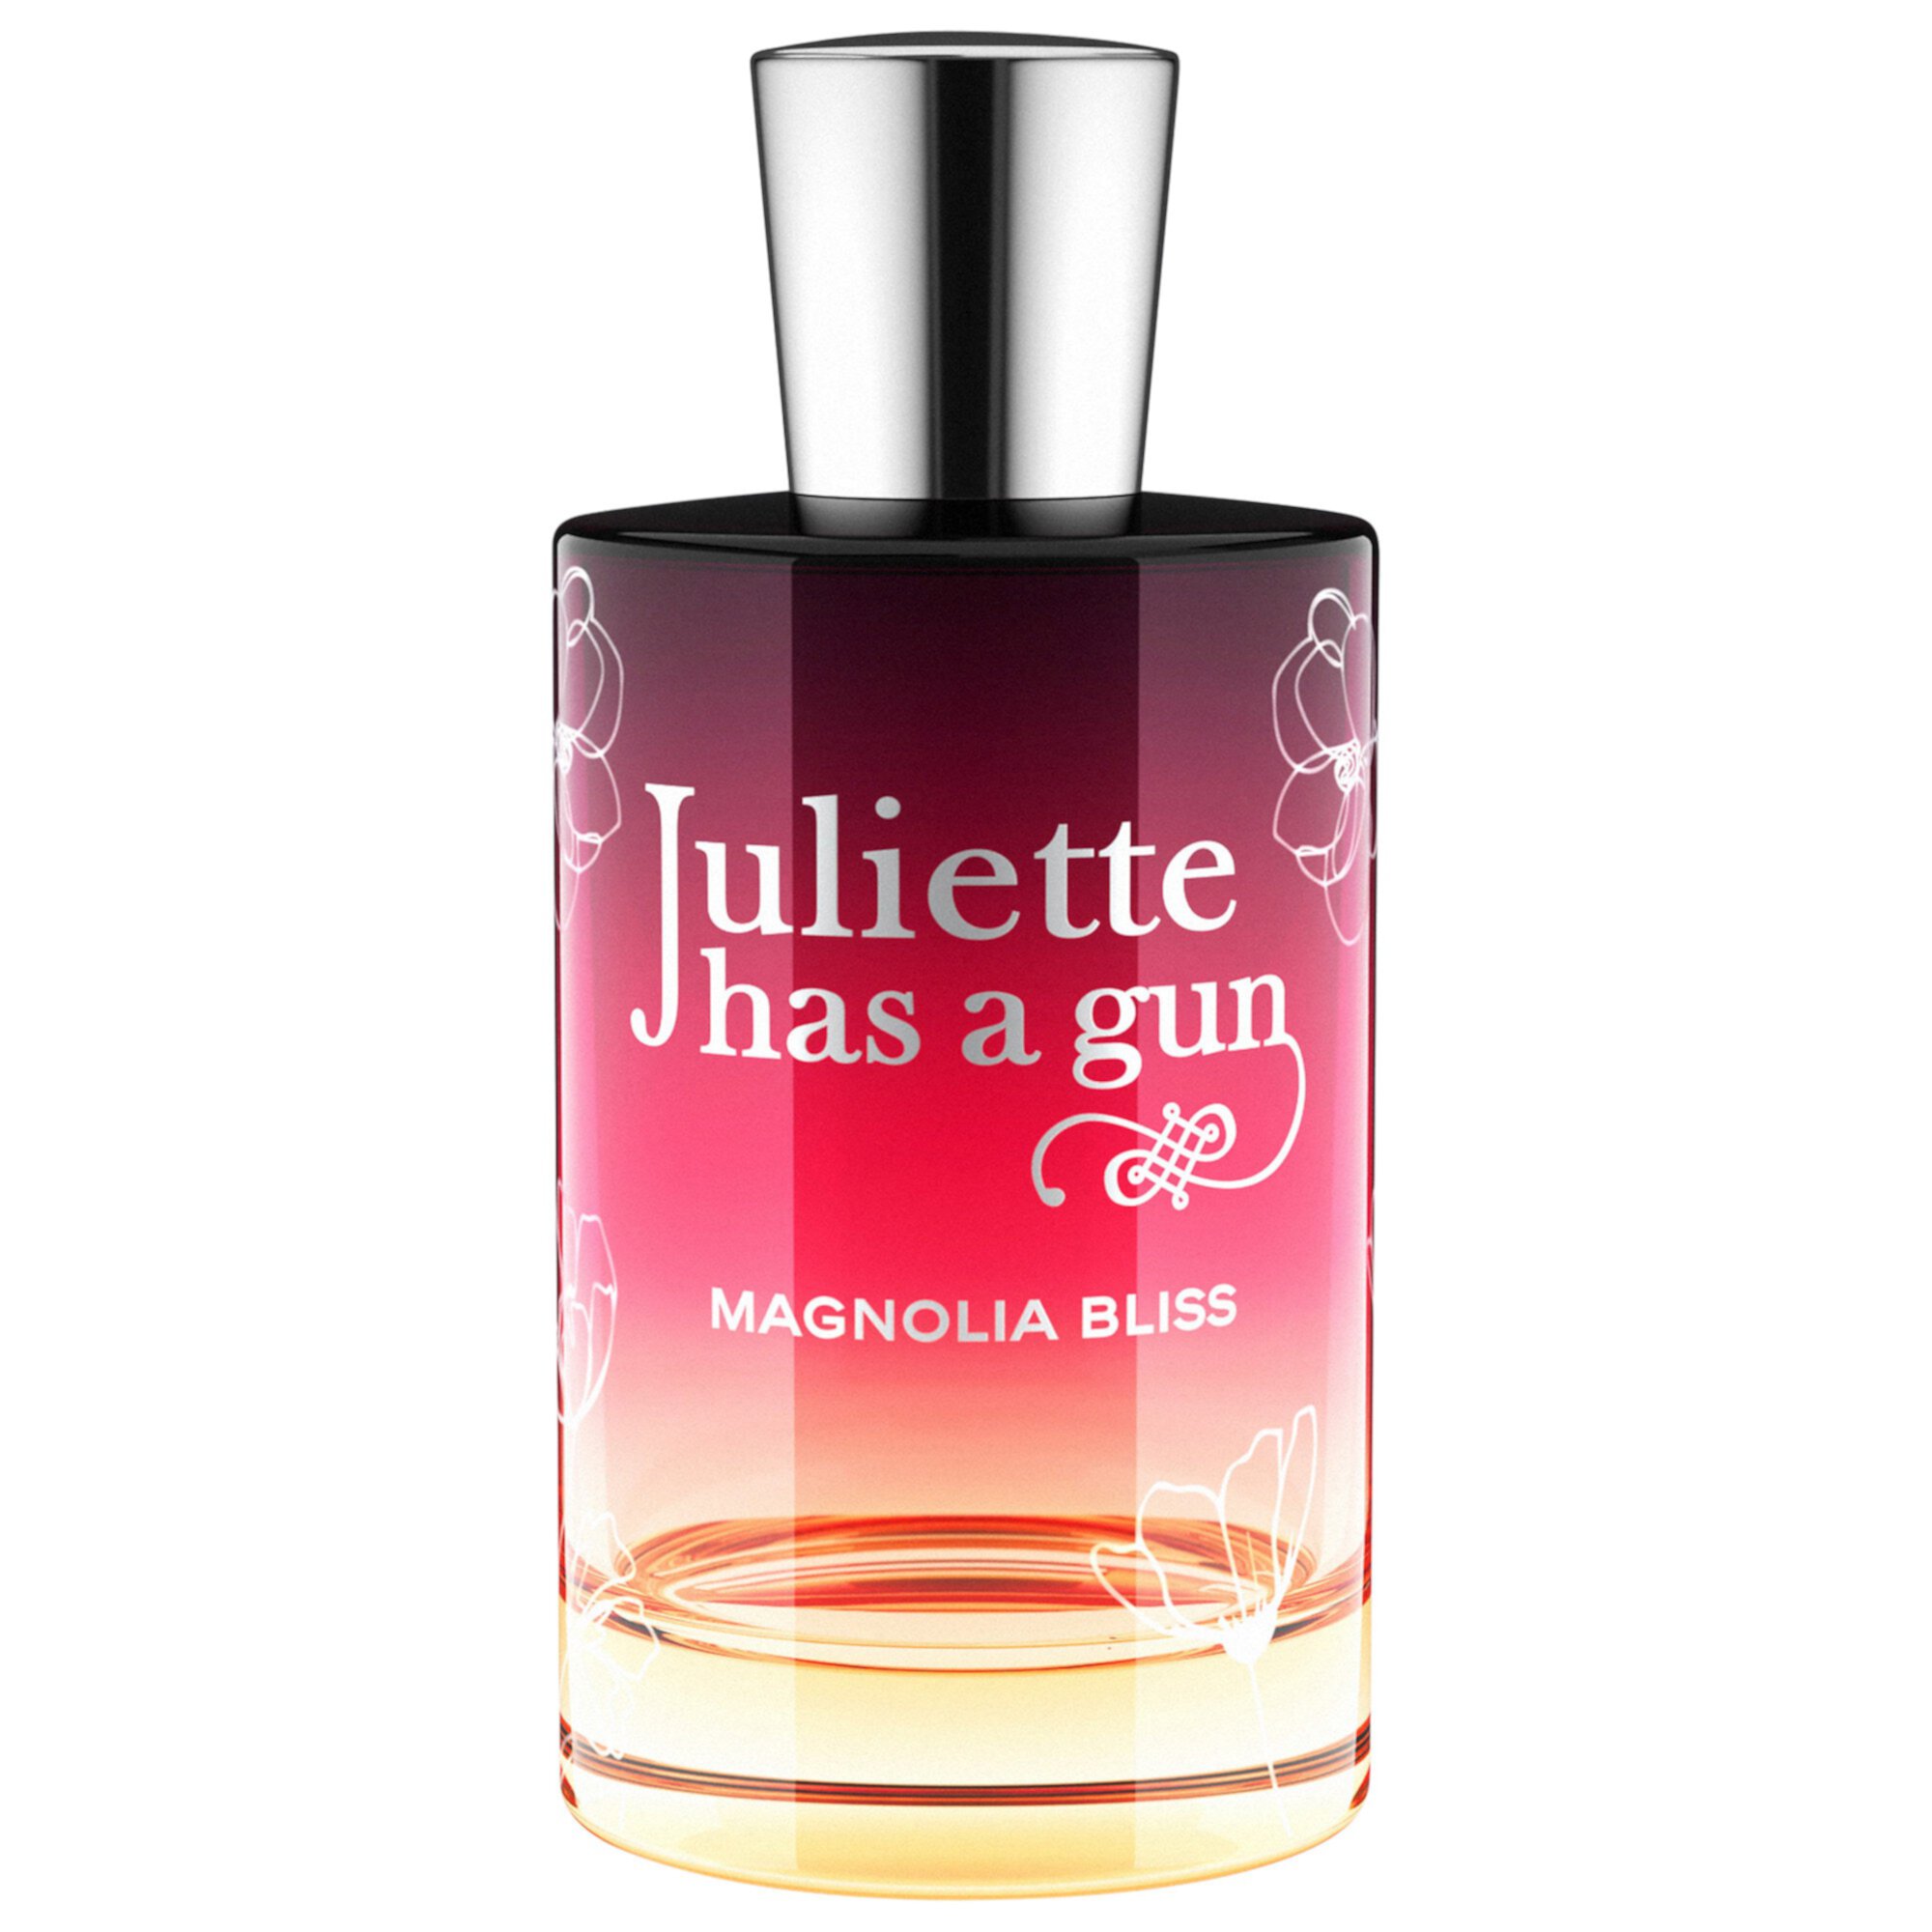 Magnolia Bliss Eau de Parfum Juliette Has a Gun